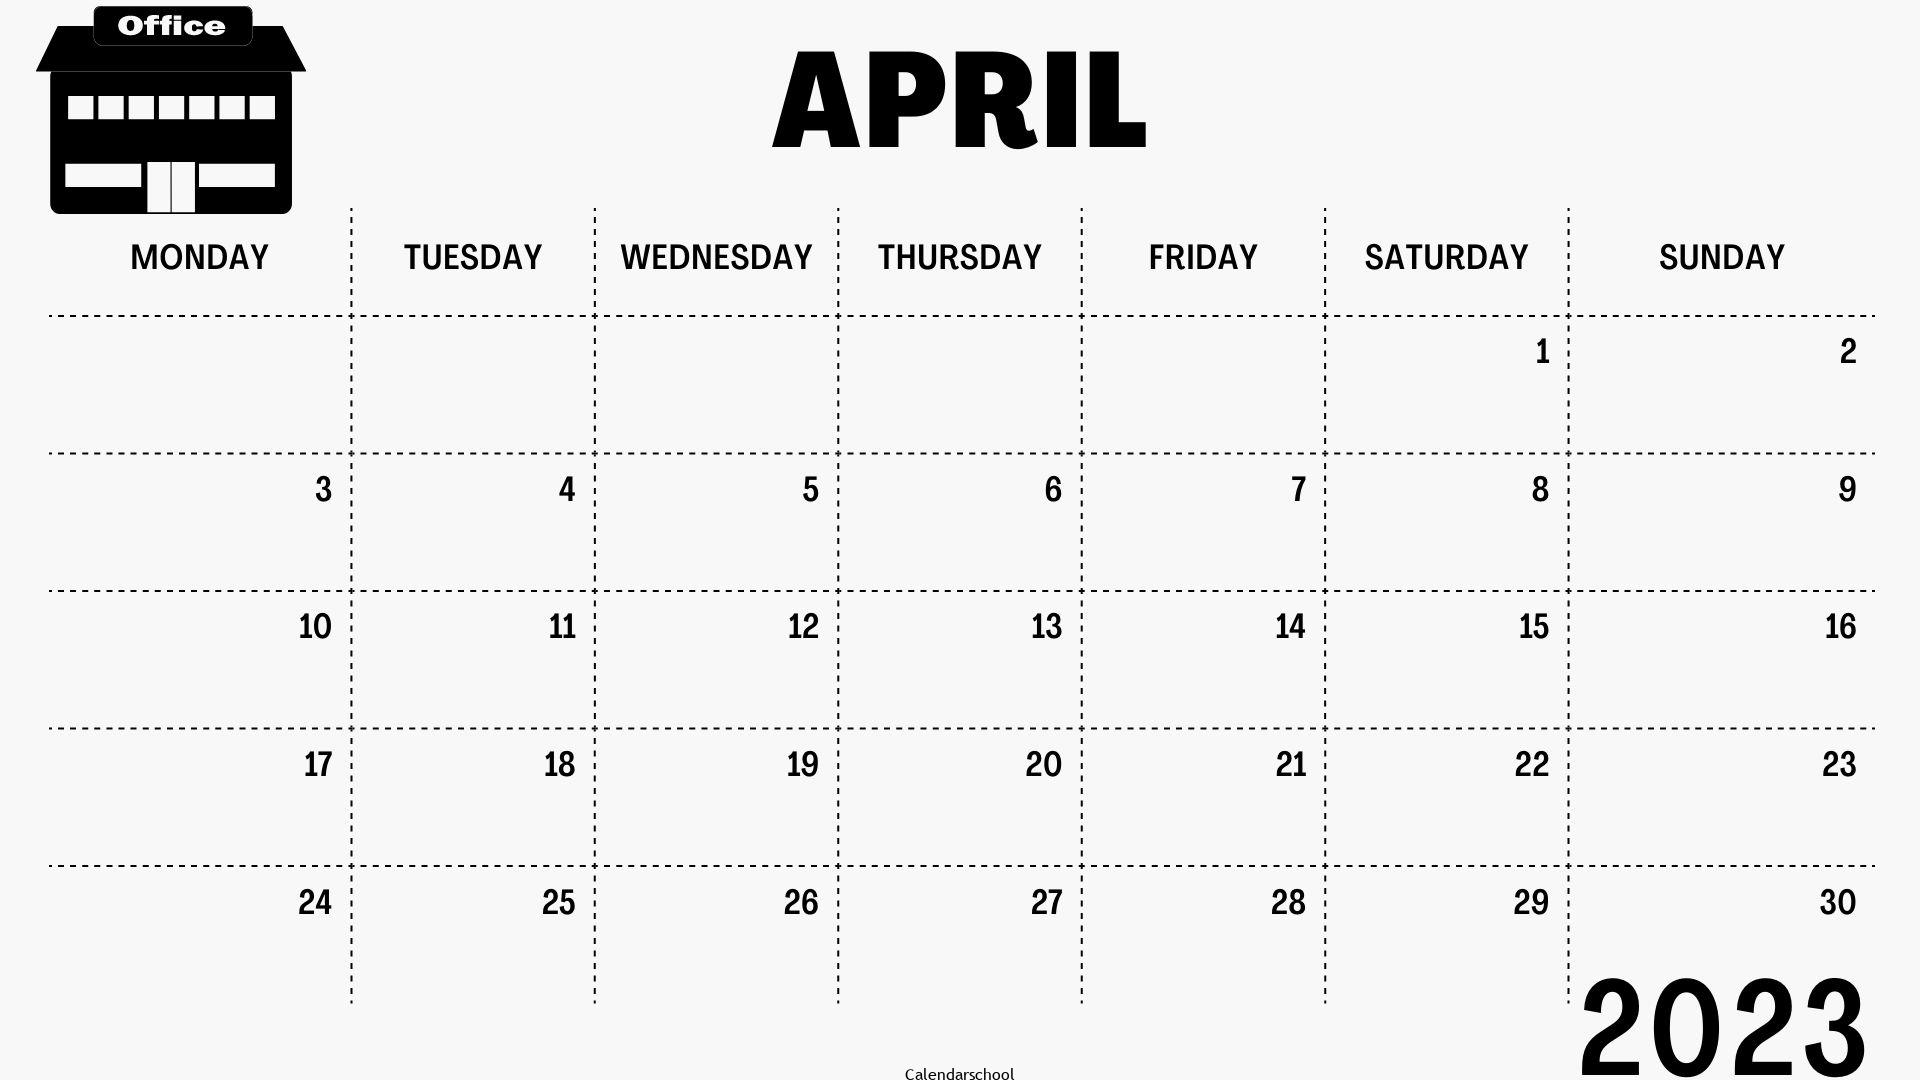 April 2023 Printable Calendar By Week